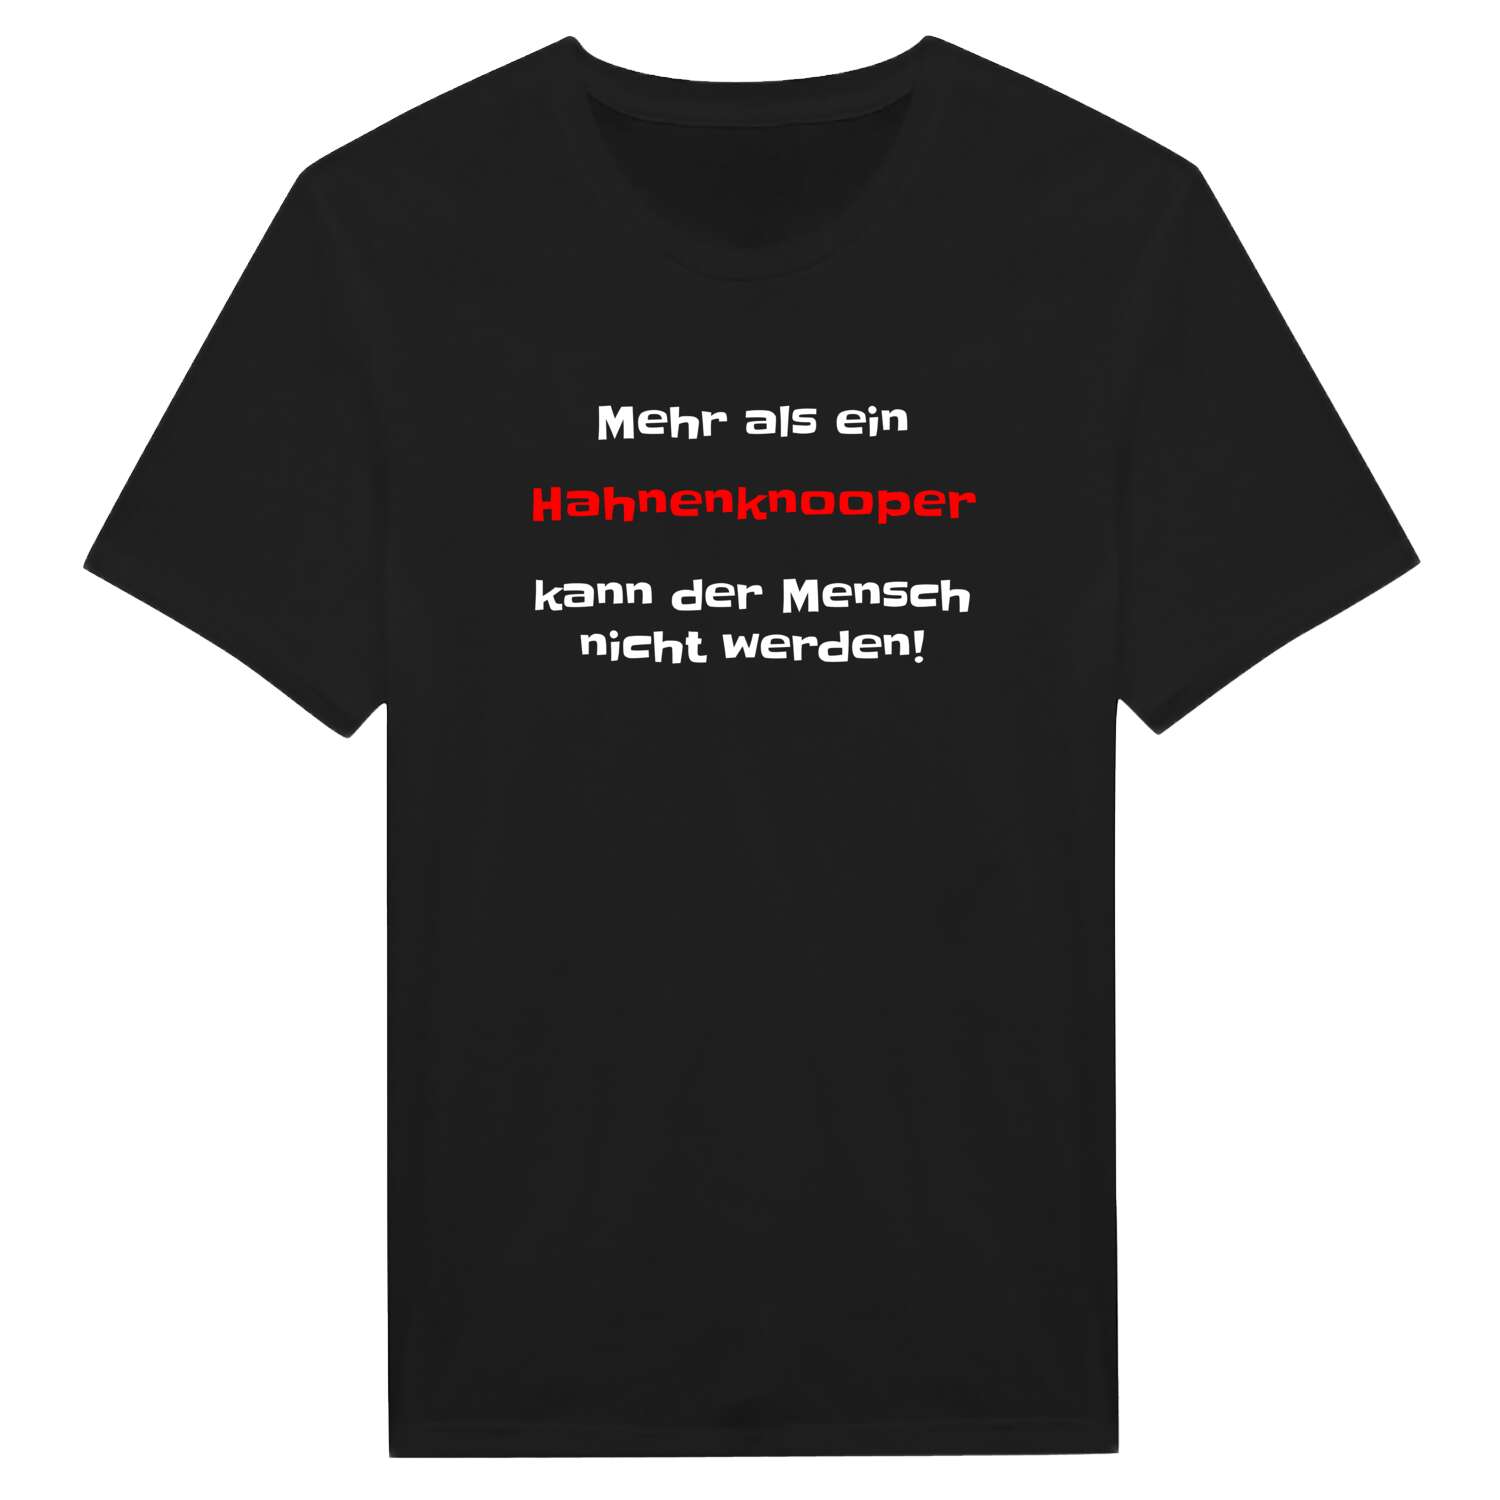 Hahnenknoop T-Shirt »Mehr als ein«